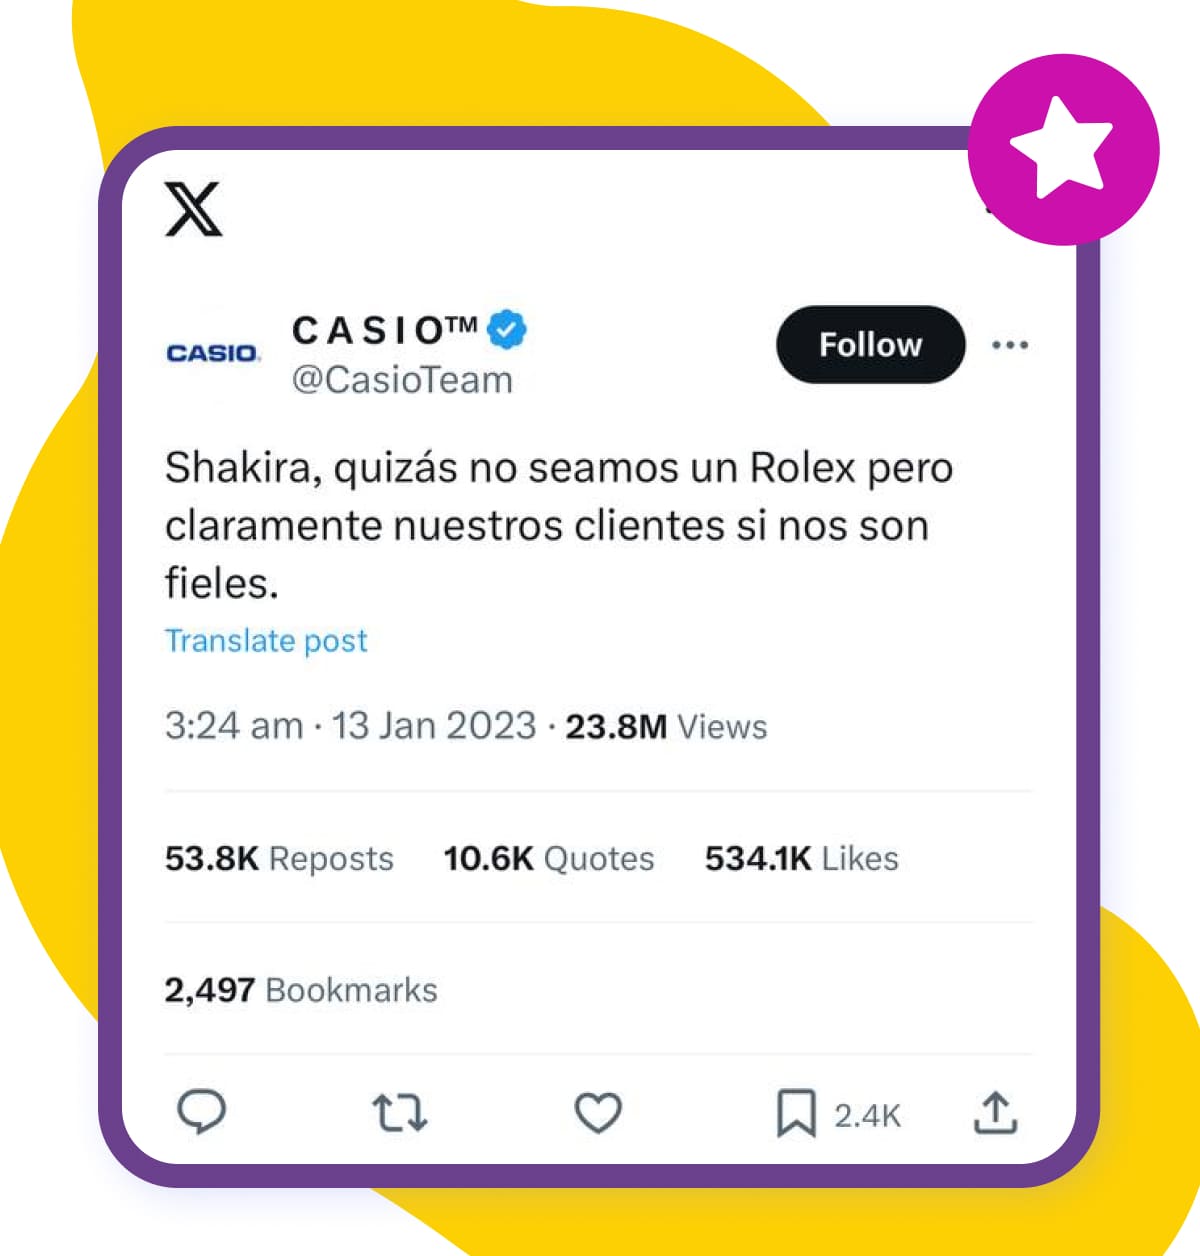 Casio media case